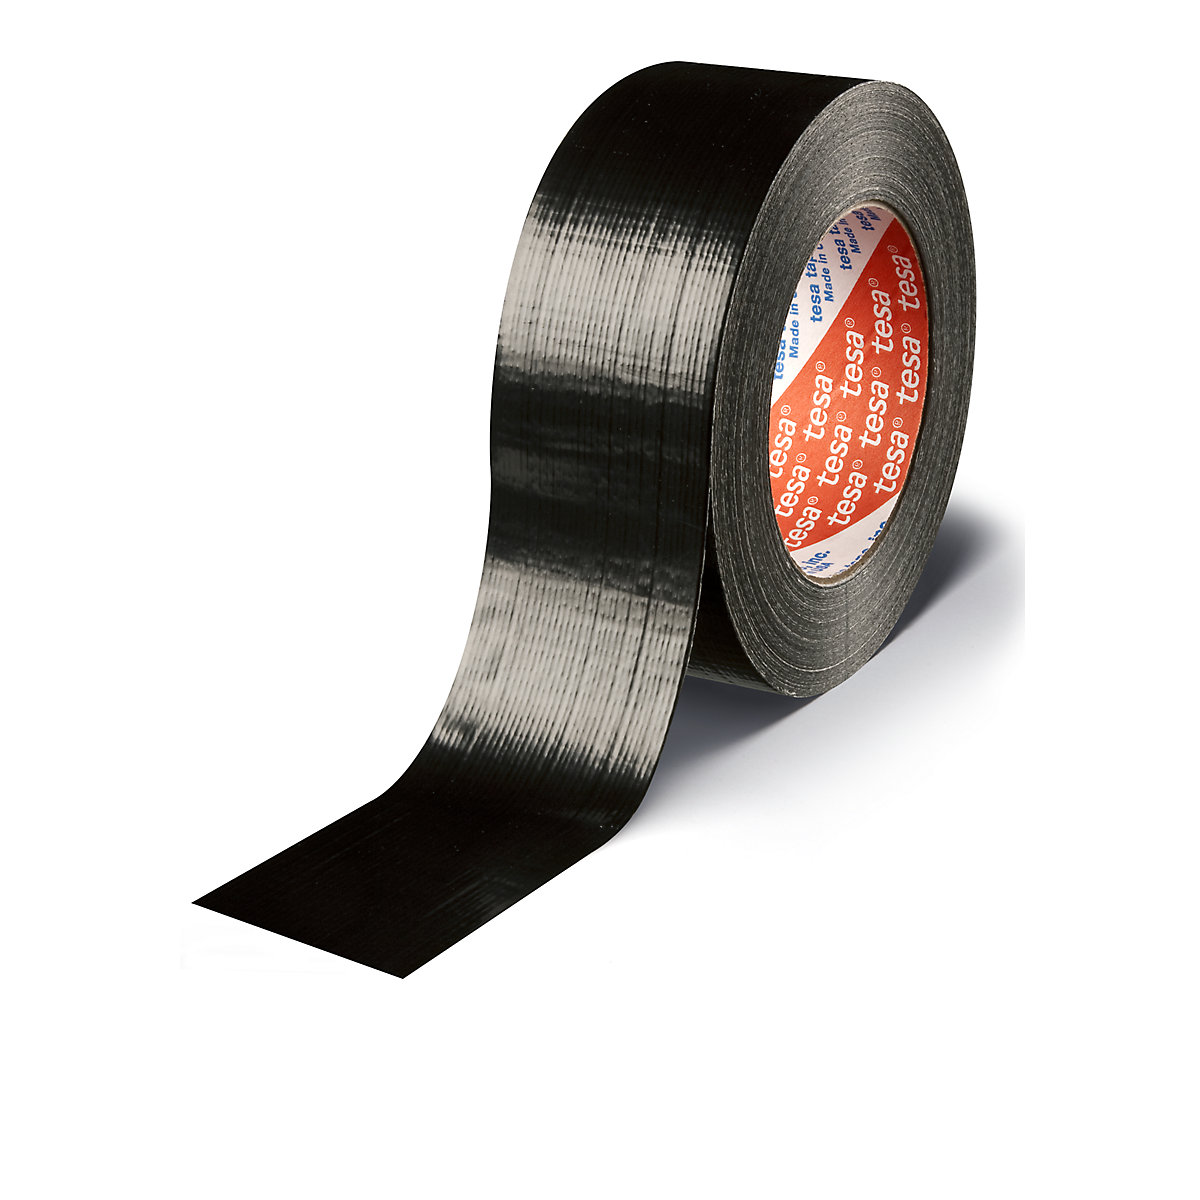 Fabric tape – tesa, tesa® 4613 standard stone tape, pack of 48 rolls, black, tape width 48 mm-6